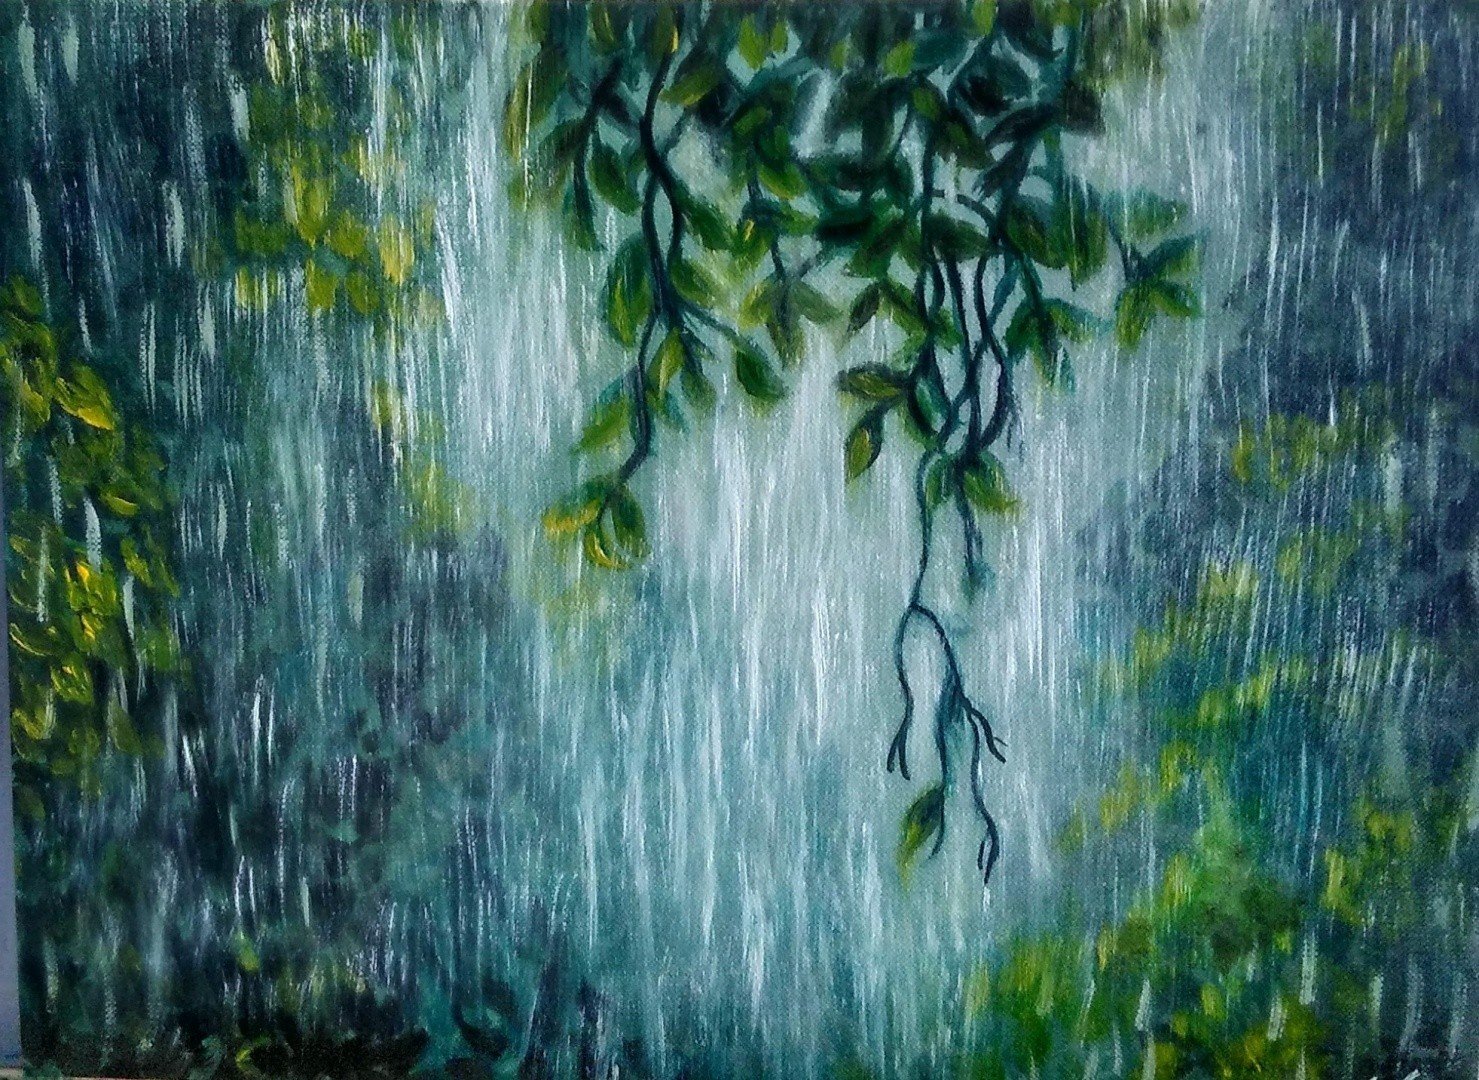 Зеленый юнец. Дождь в тропиках. Тропический ливень. Тропические леса дождь. Дождь в тропическом лесу.